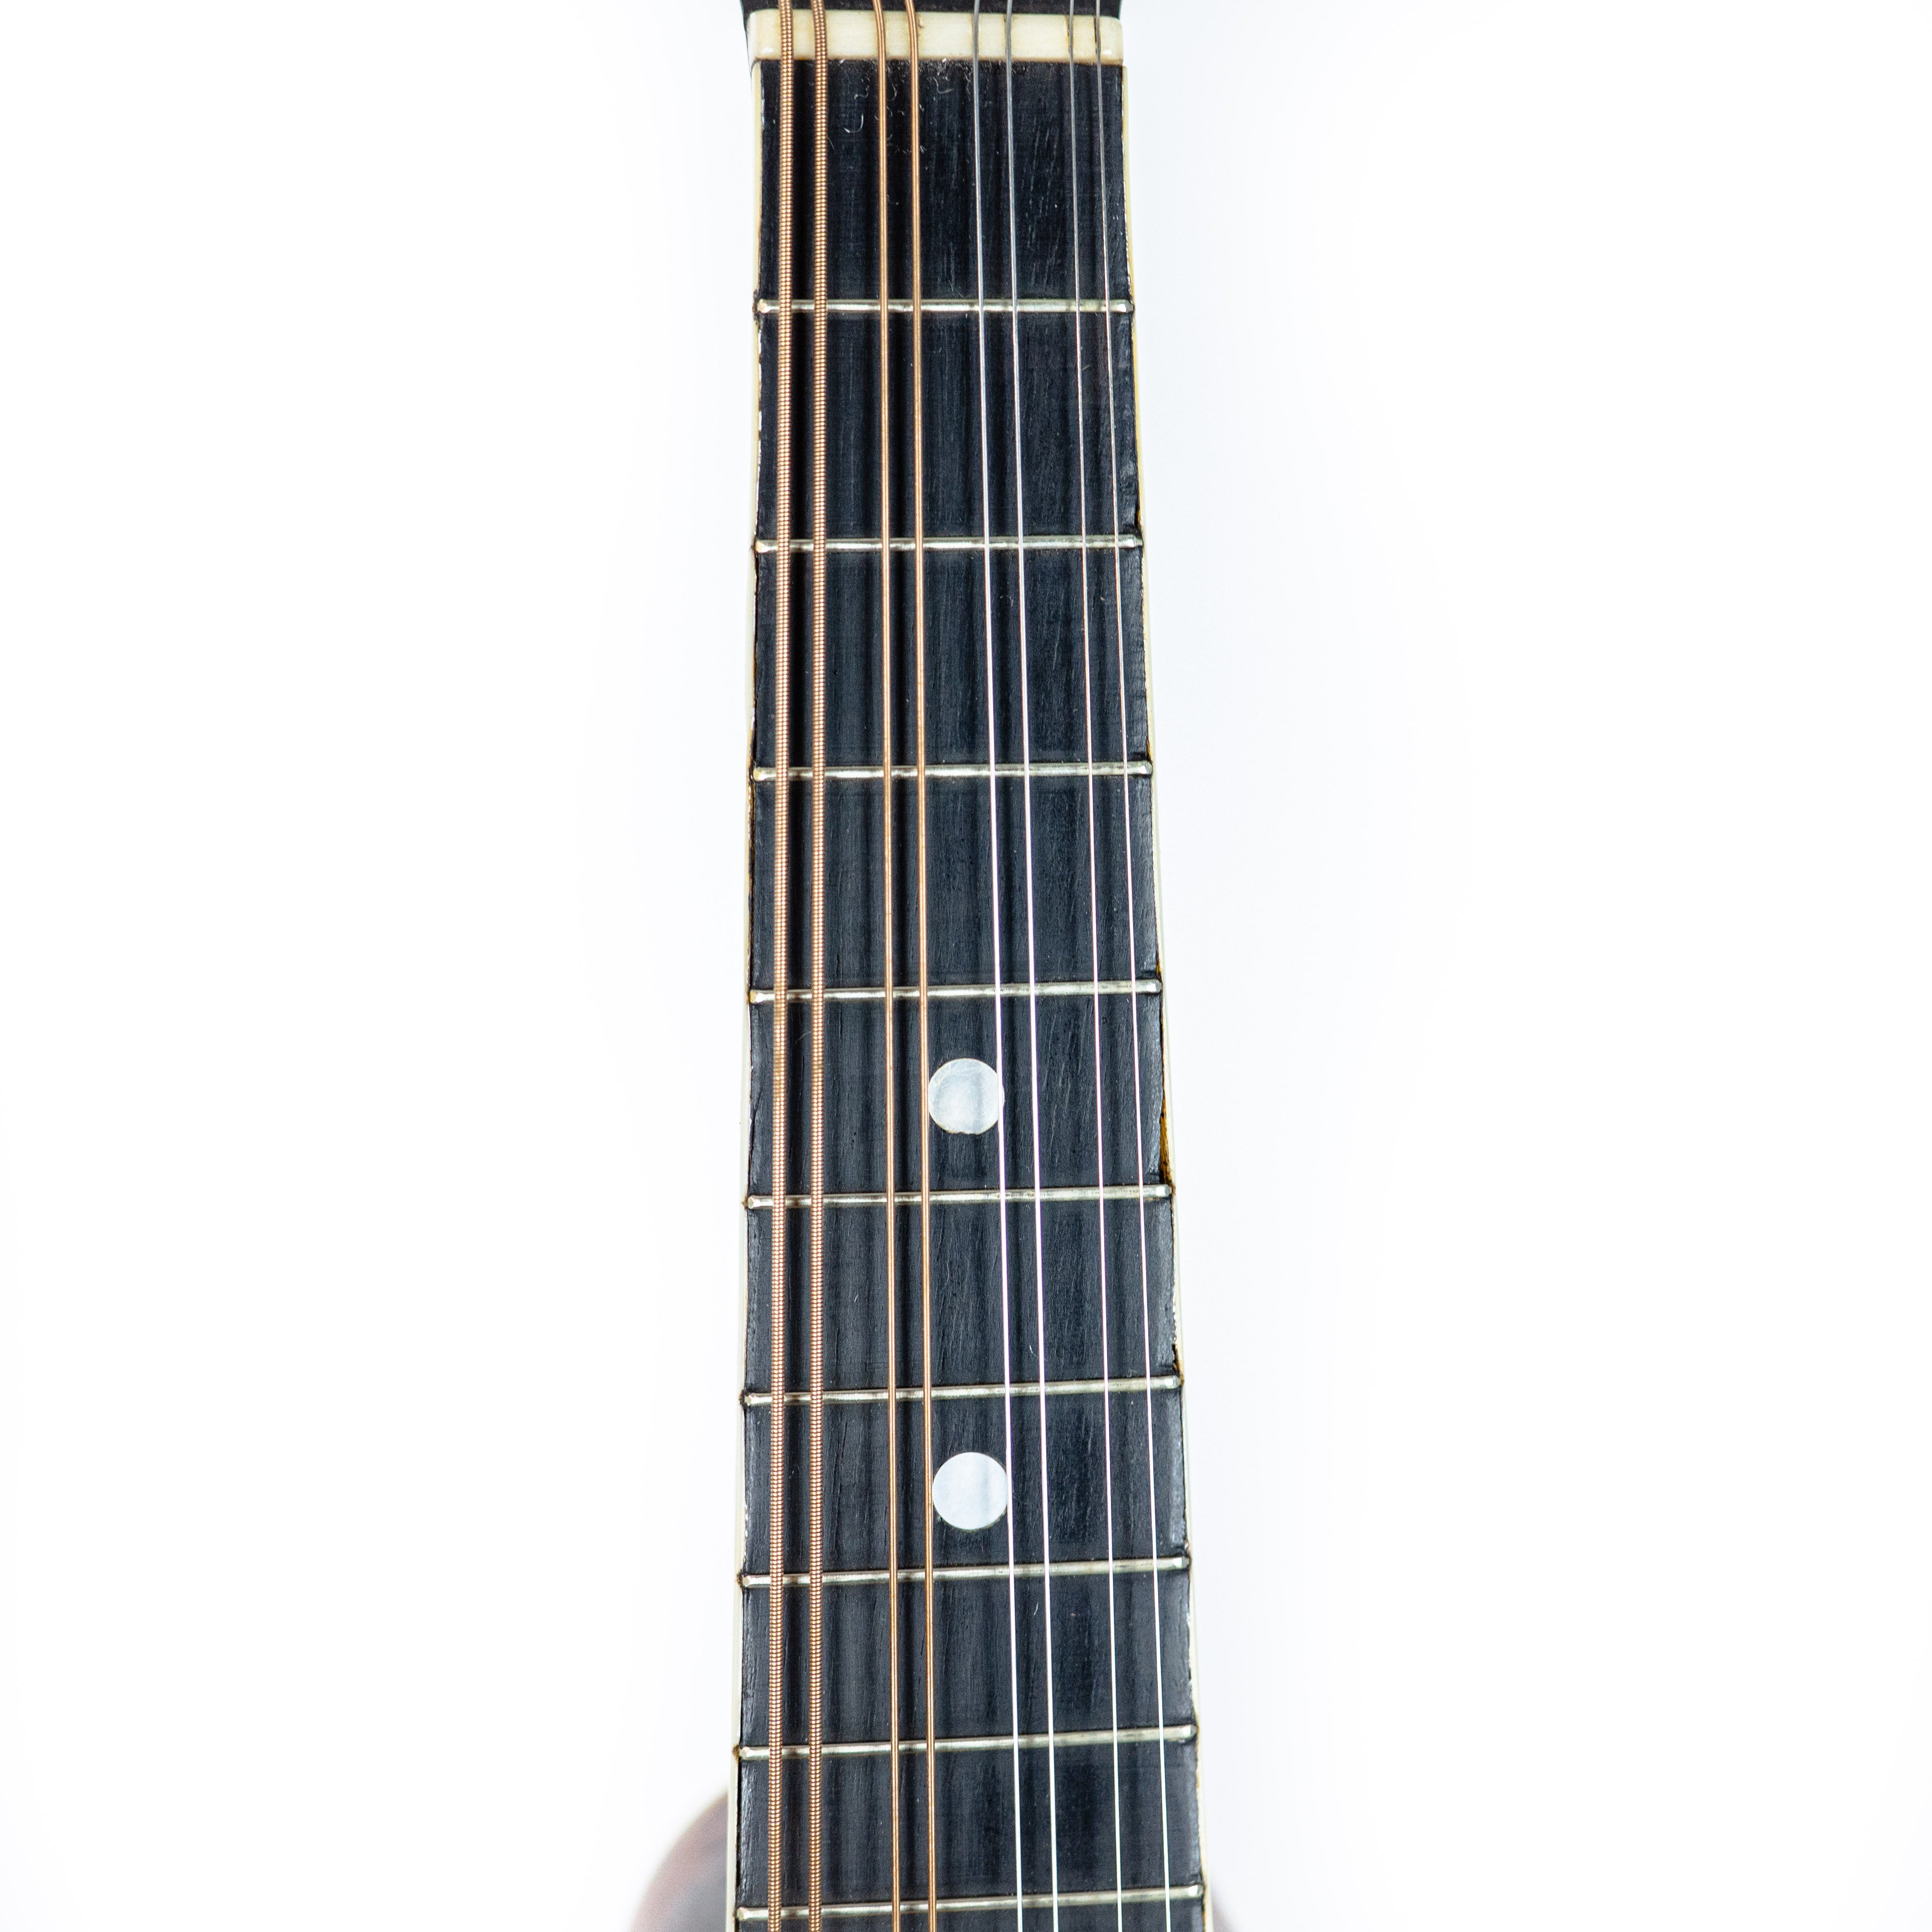 Gibson 1919 A Mandolin